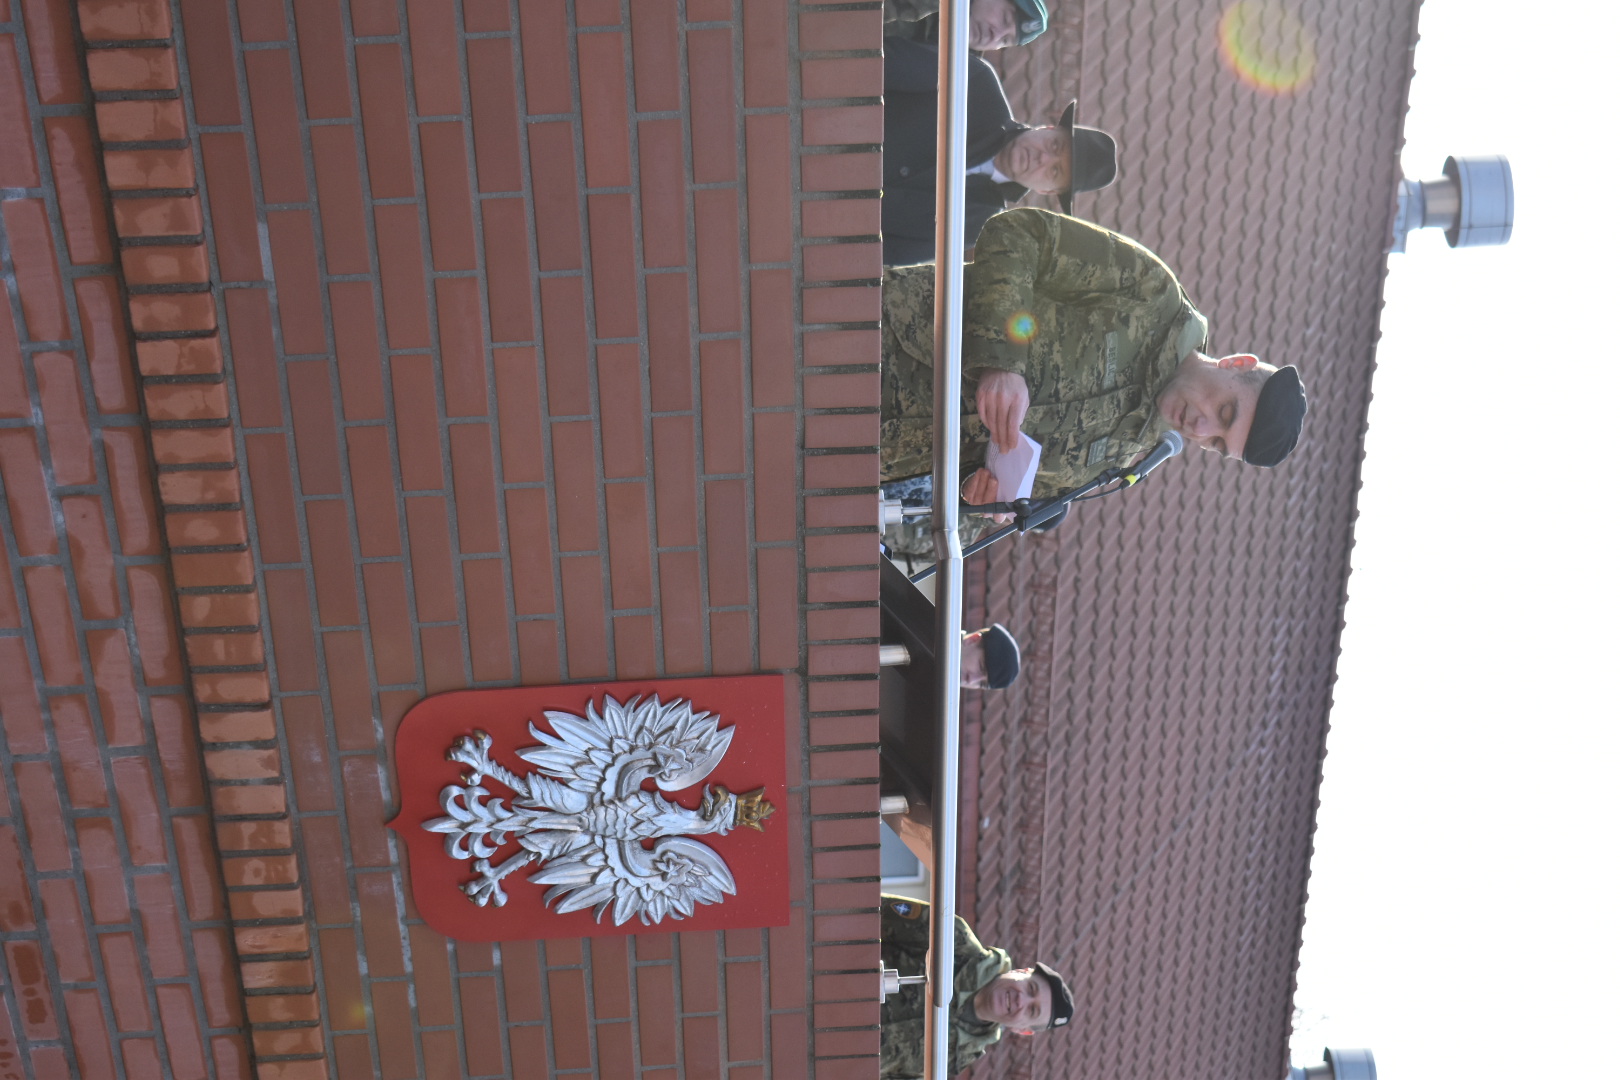 Rotacija hrvatskih kontingenata u NATO aktivnosti Ojačane prednje prisutnosti u Poljskoj